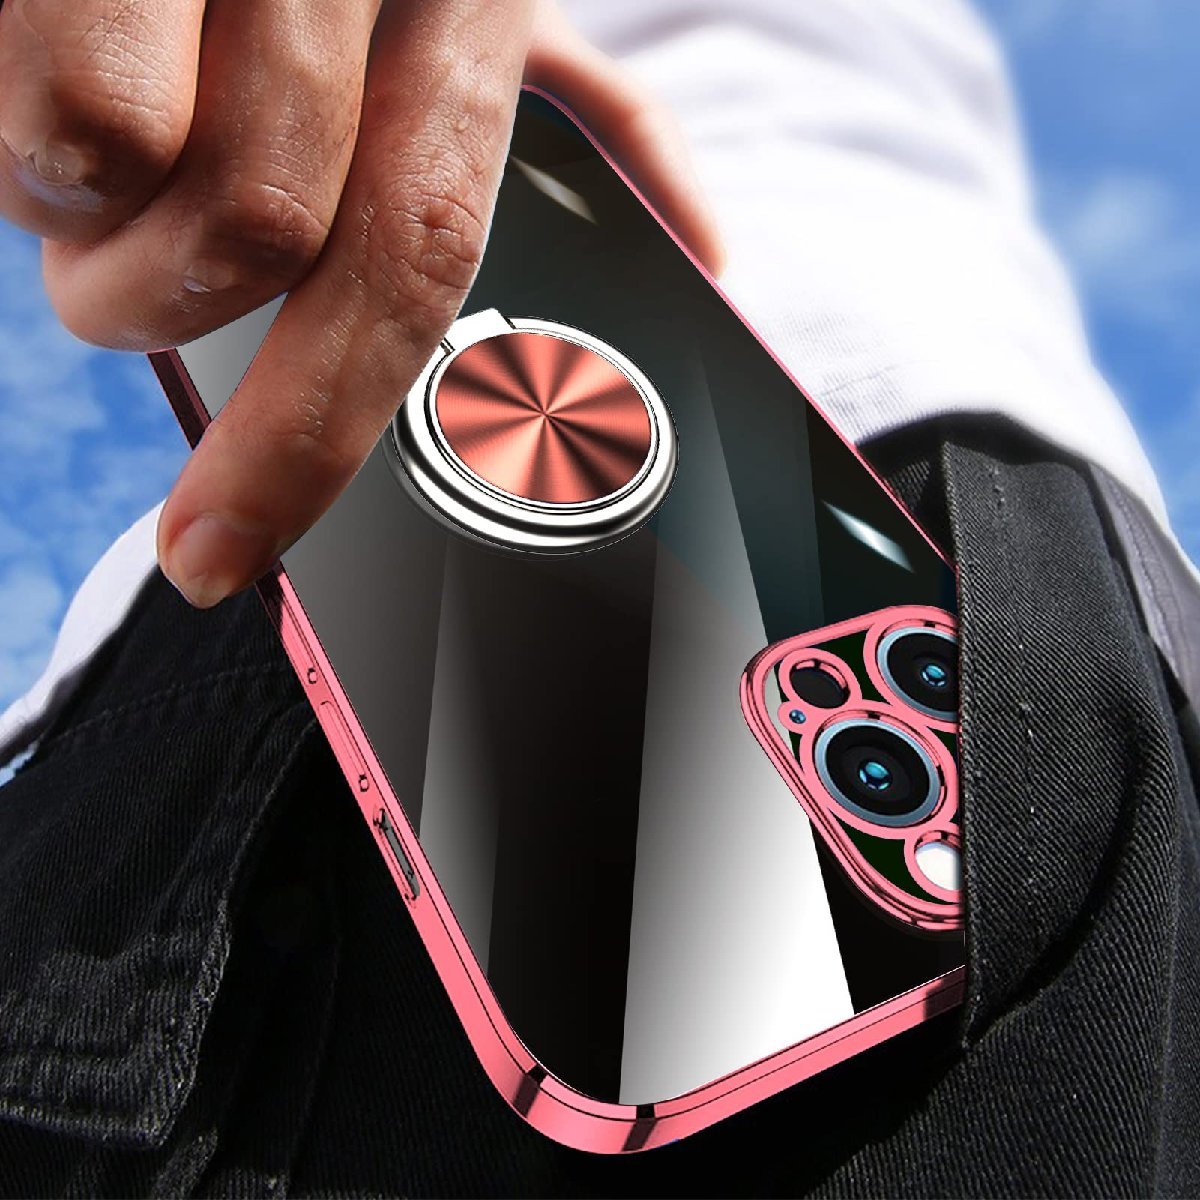  доставка бесплатно ★iPhone XR  кейс   кольцо   идет в комплекте   чистый   ударостойкий    подставка  функция   автомобиль ... держатель  поддержка   все  поверхность   защита  ( розовый )